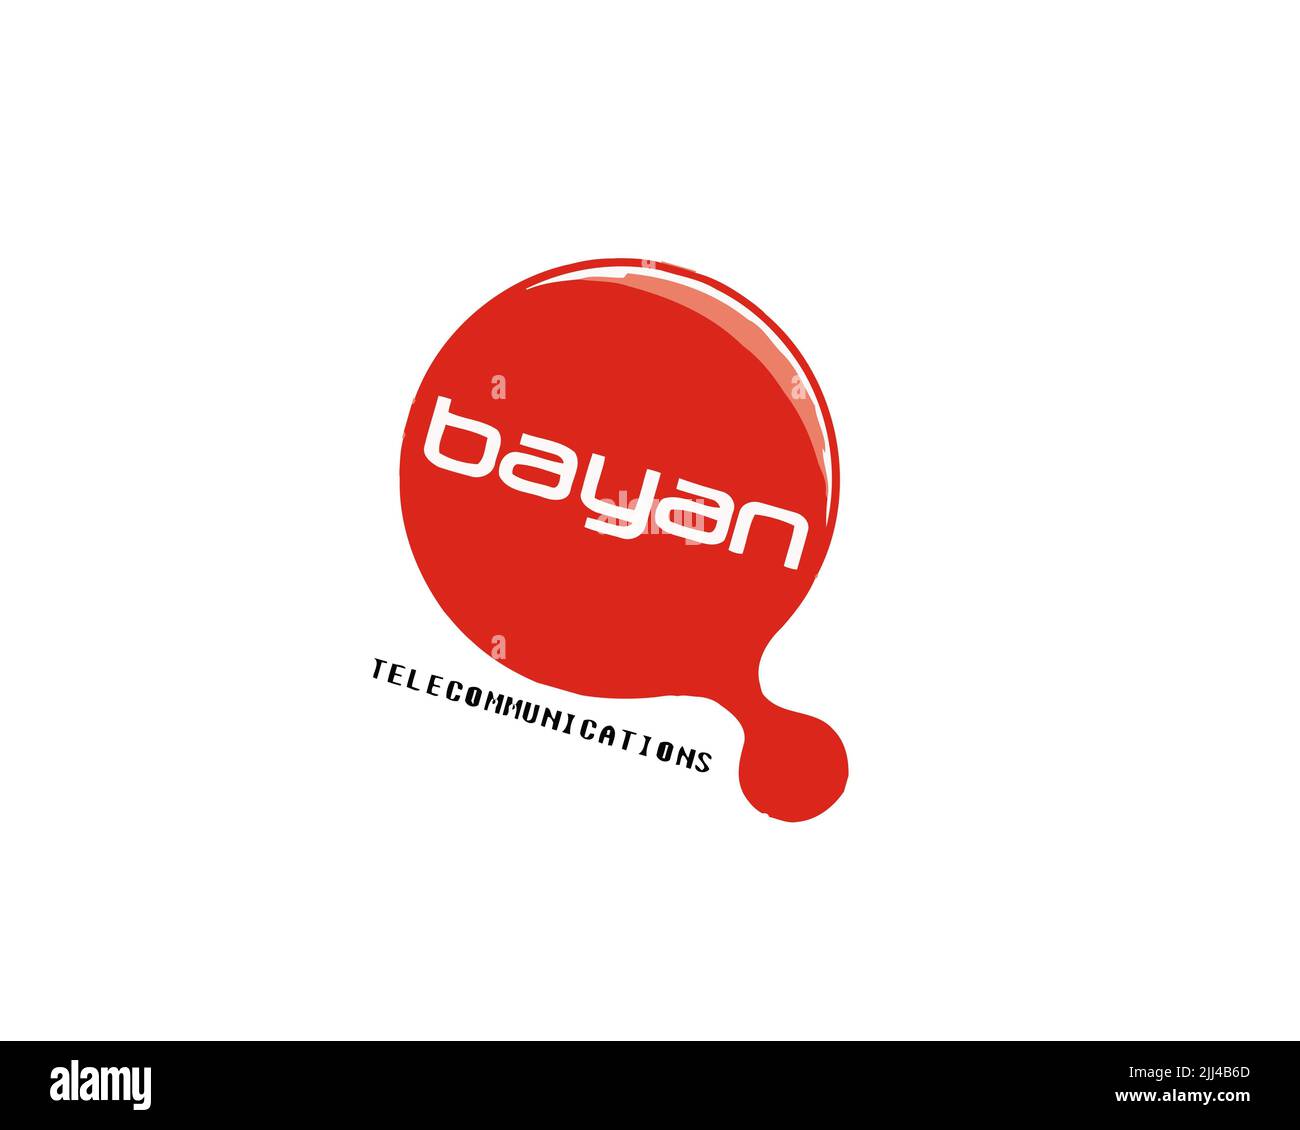 Bayan Telecommunications, logo ruotato, sfondo bianco B. Foto Stock